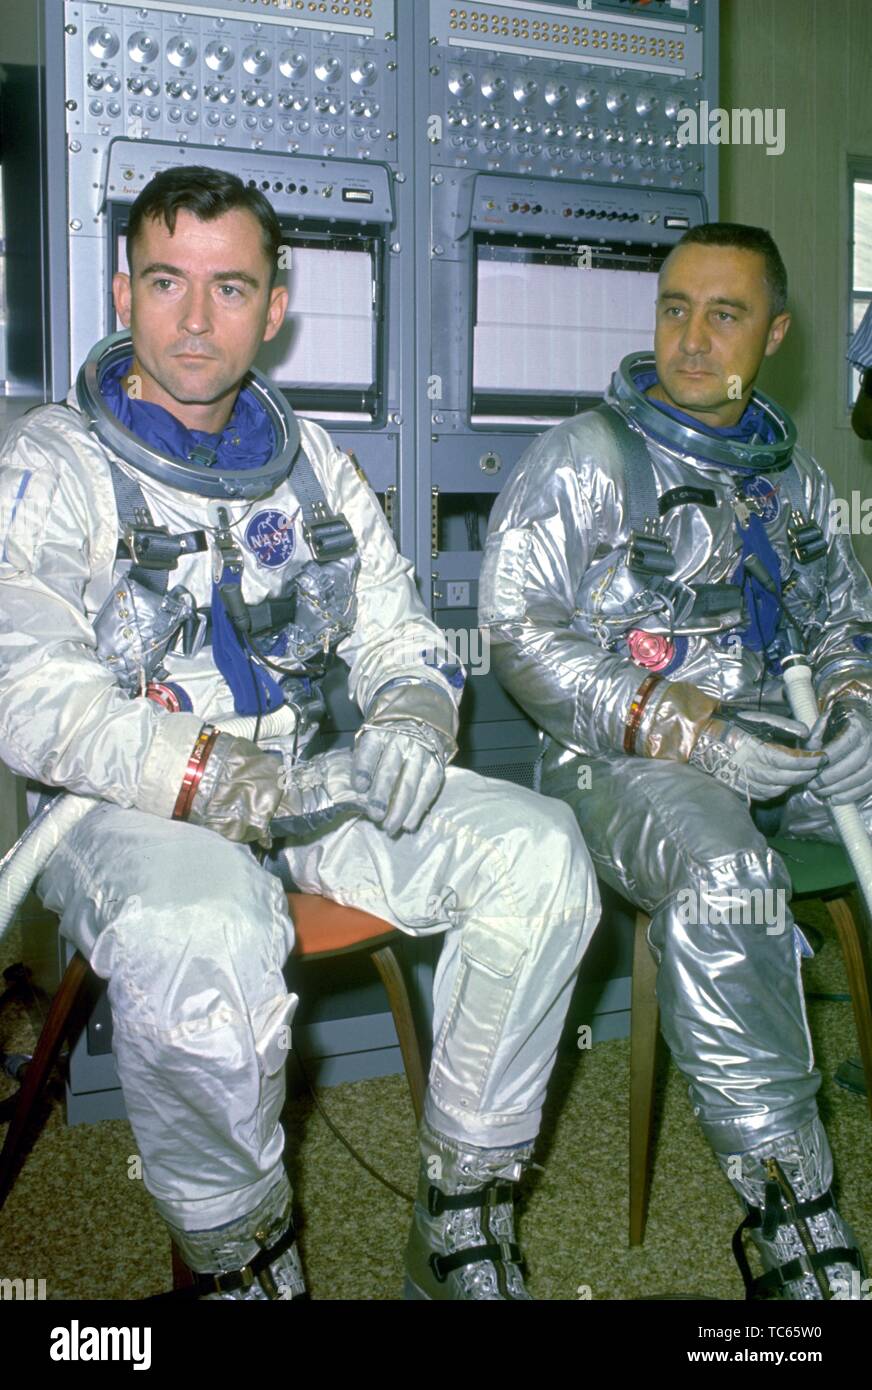 Gli astronauti John W giovani e ho Virgil Grissom durante gli esercizi di addestramento come il back-up equipaggio per la Gemini VI missione, 20 ottobre 1965. Immagine cortesia Nazionale Aeronautica e Spaziale Administration (NASA). () Foto Stock